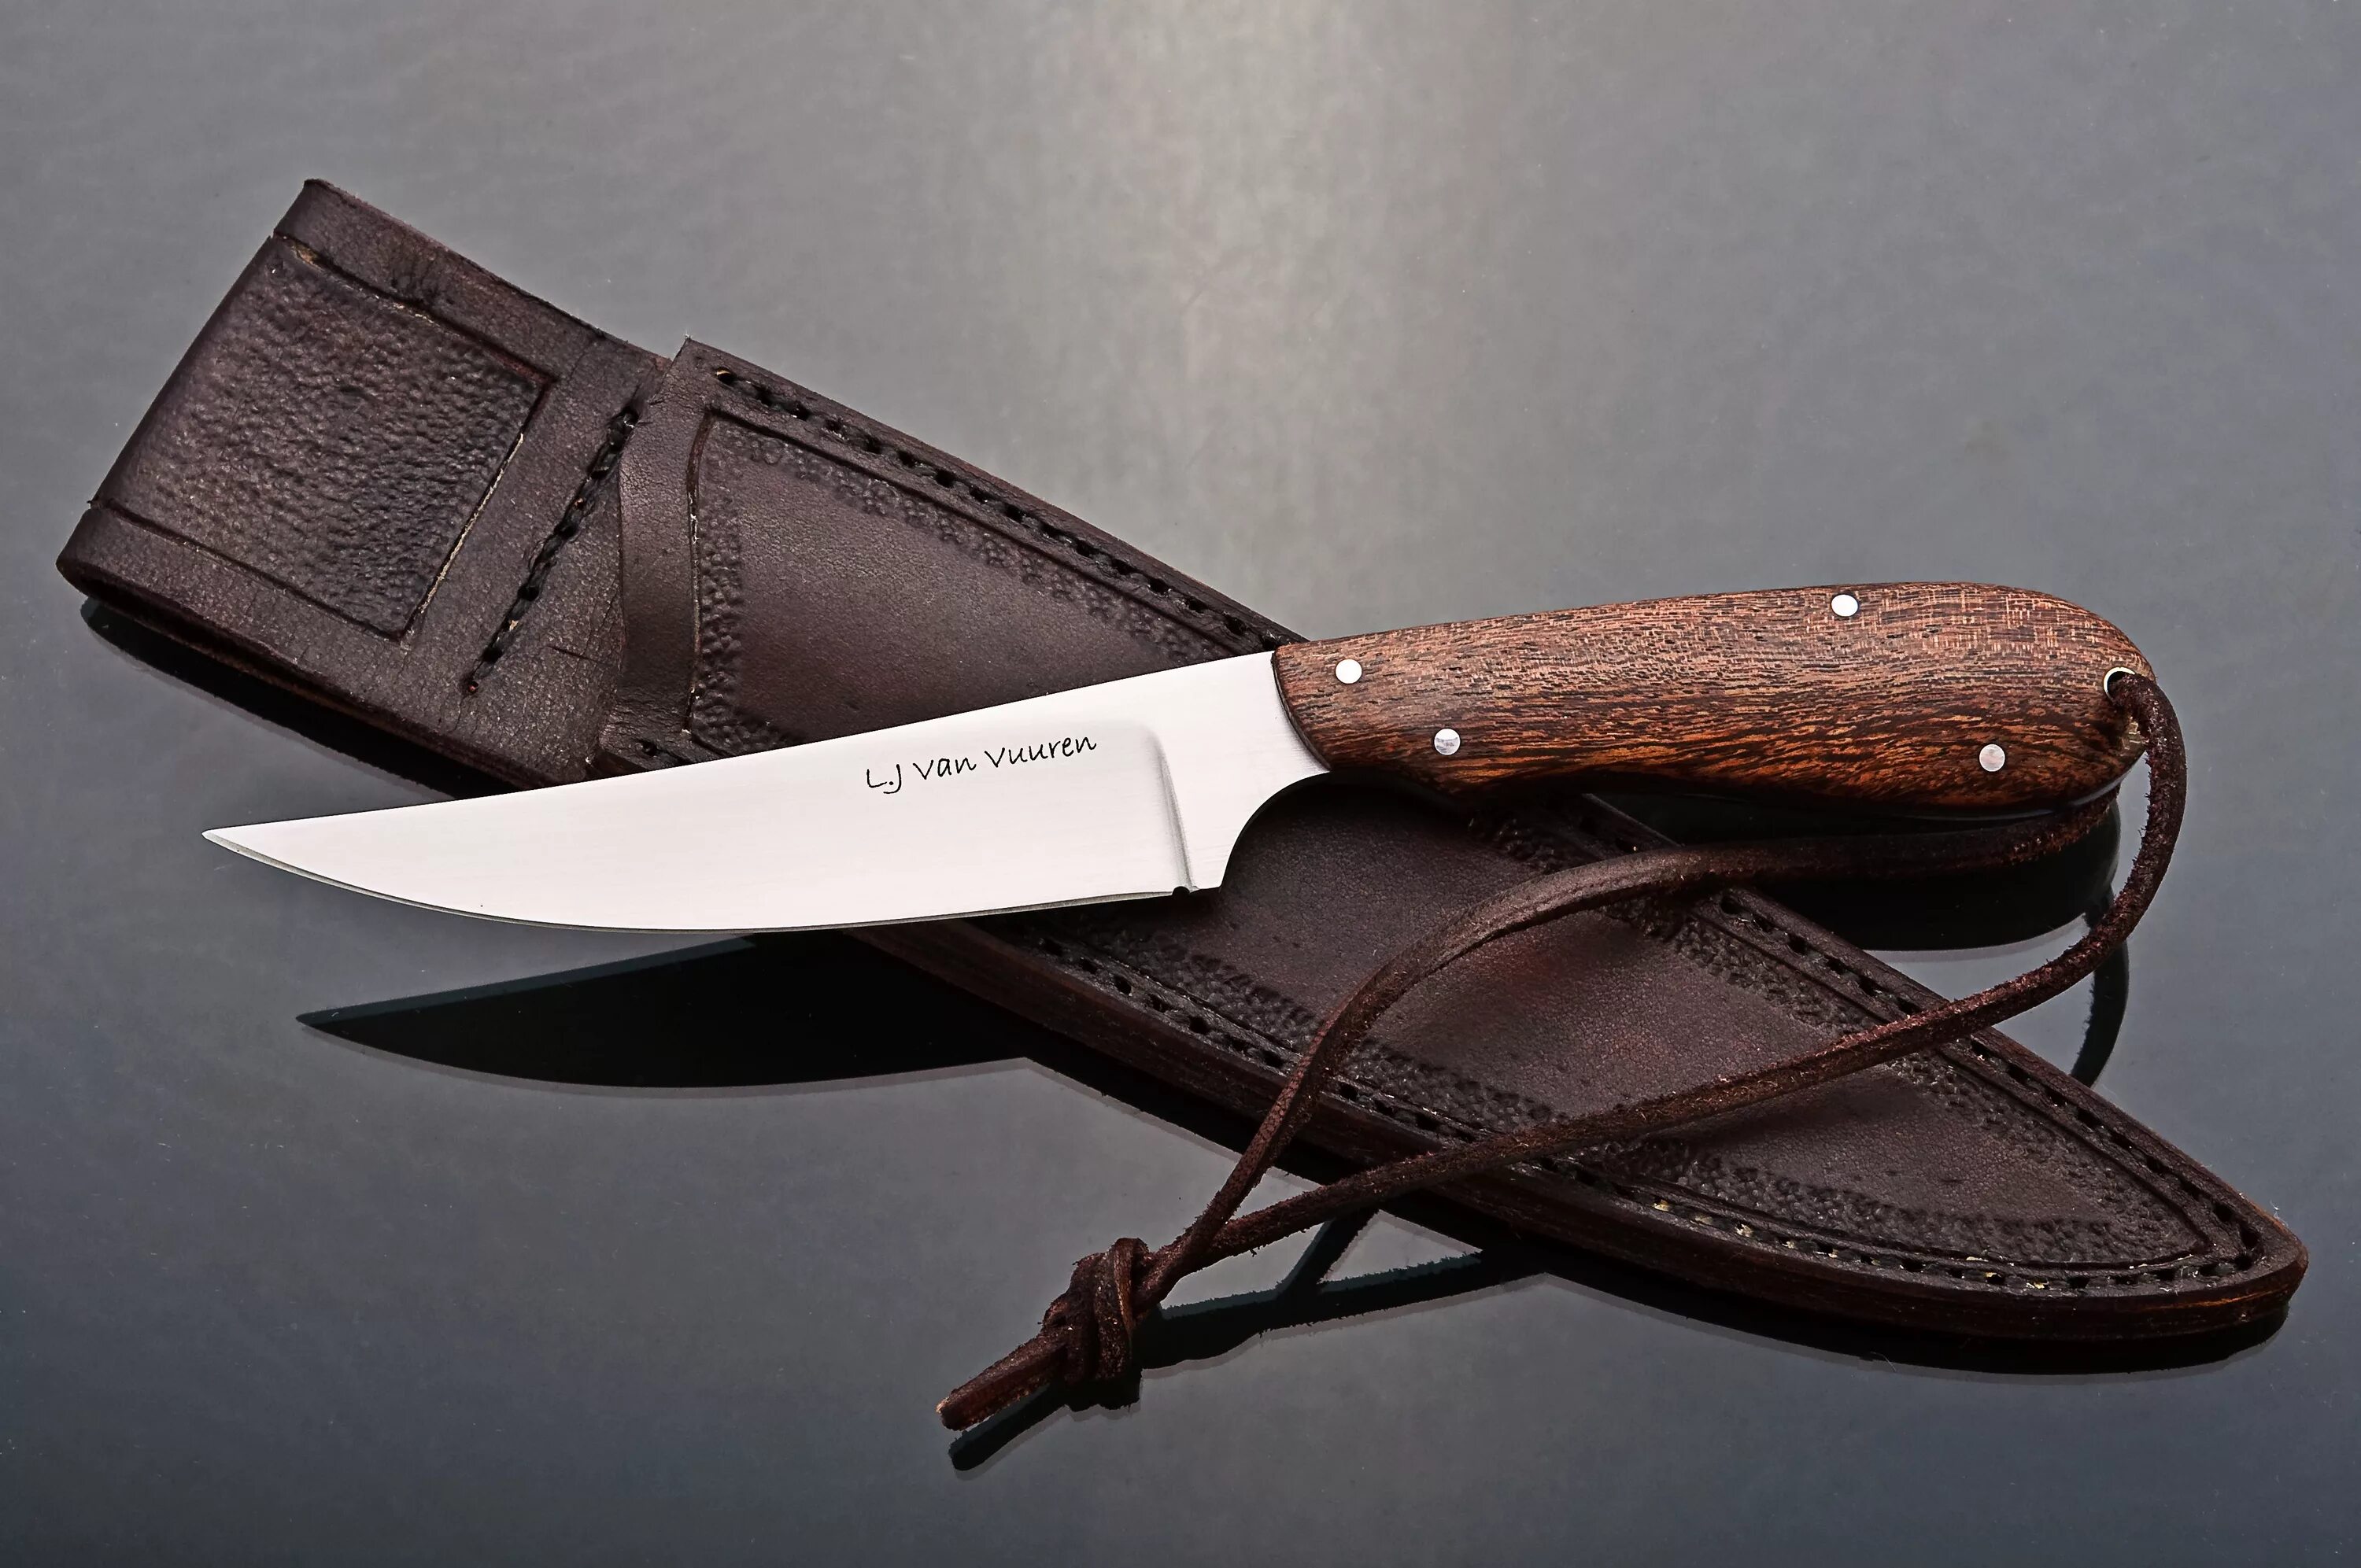 Охотничий нож. Охотничий универсальный нож. Американские охотничьи ножи. Кухонные охотничьи ножи.